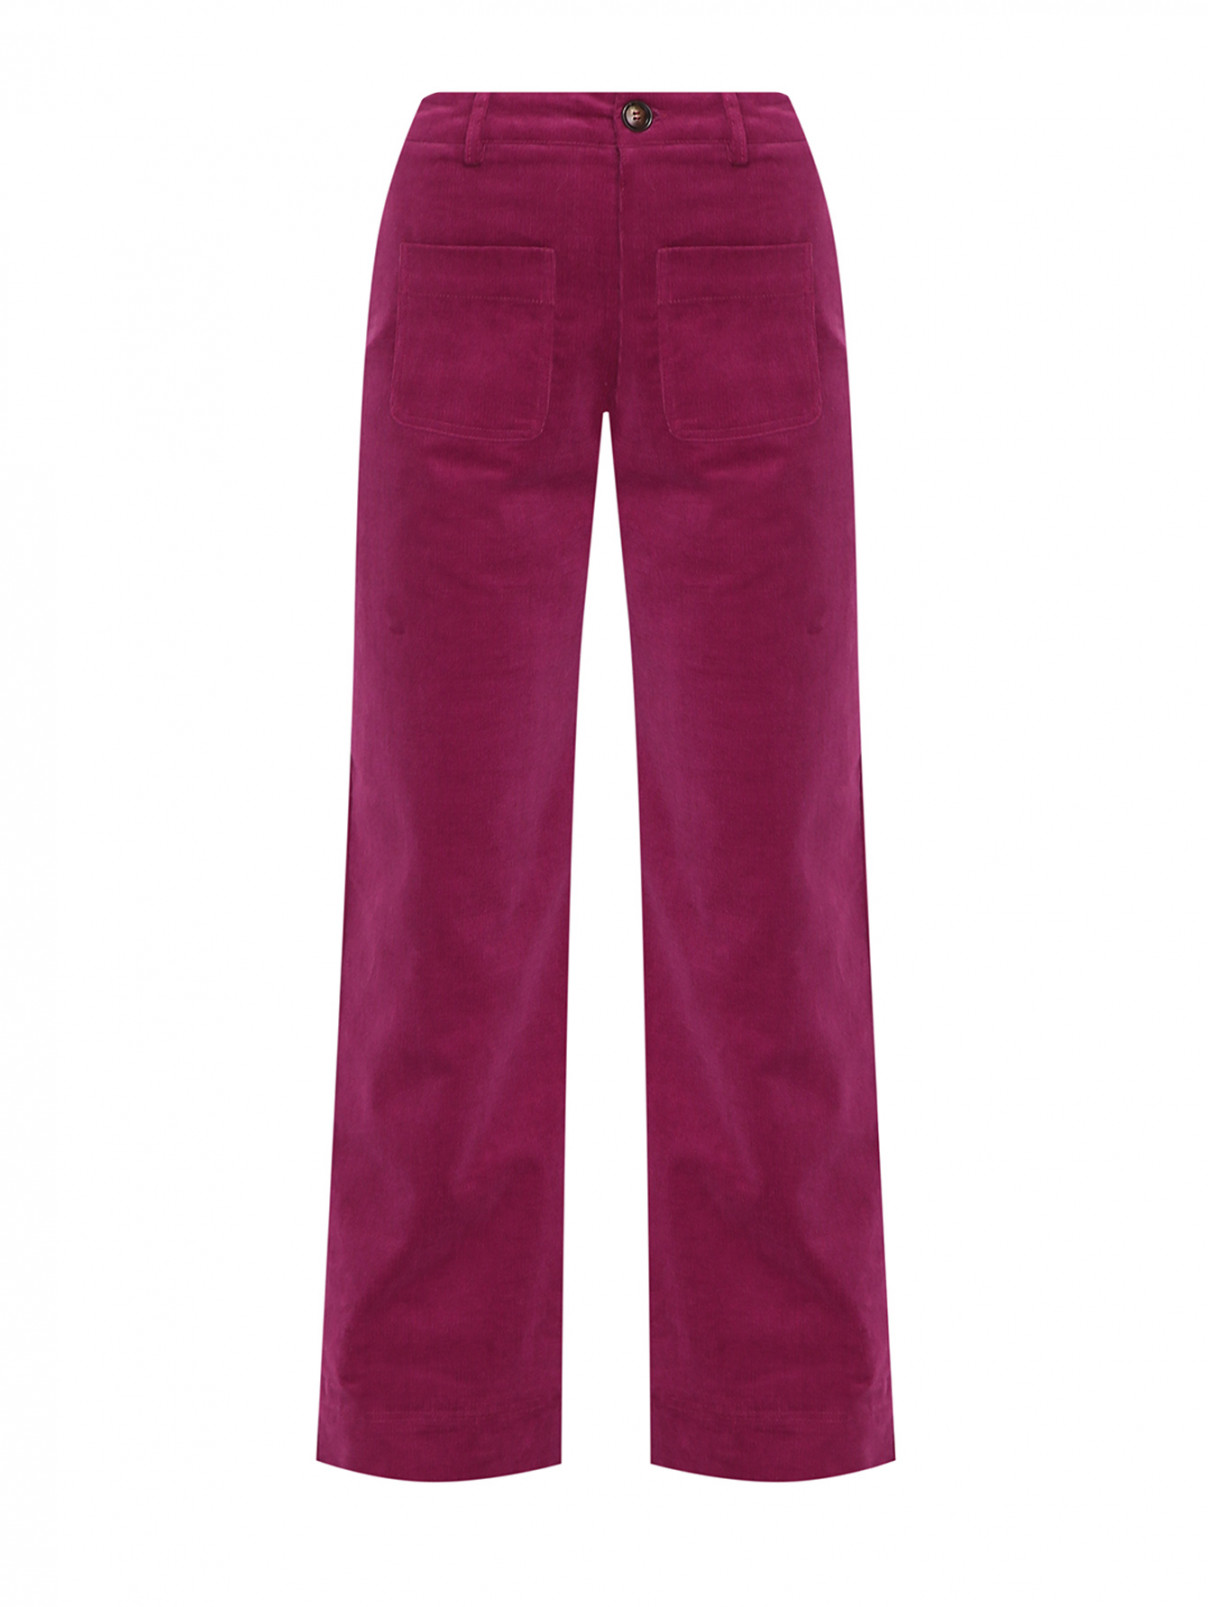 Однотонные брюки из хлопка с карманами Suncoo  –  Общий вид  – Цвет:  Красный